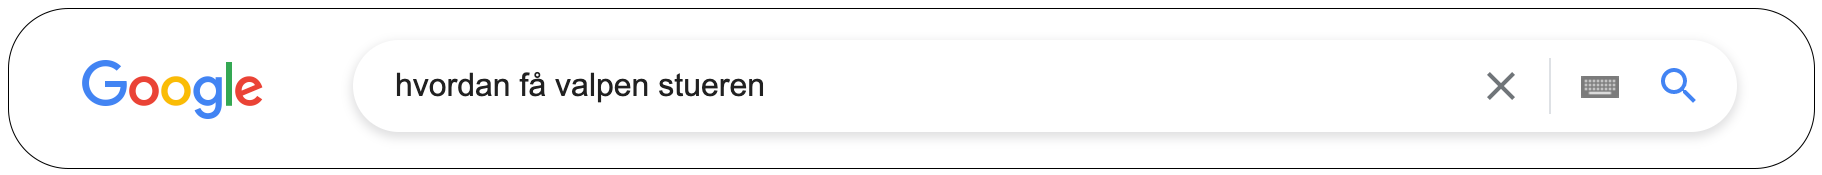 Søkemotoren i Google, med søketermen: "hvordan få valpen stueren".